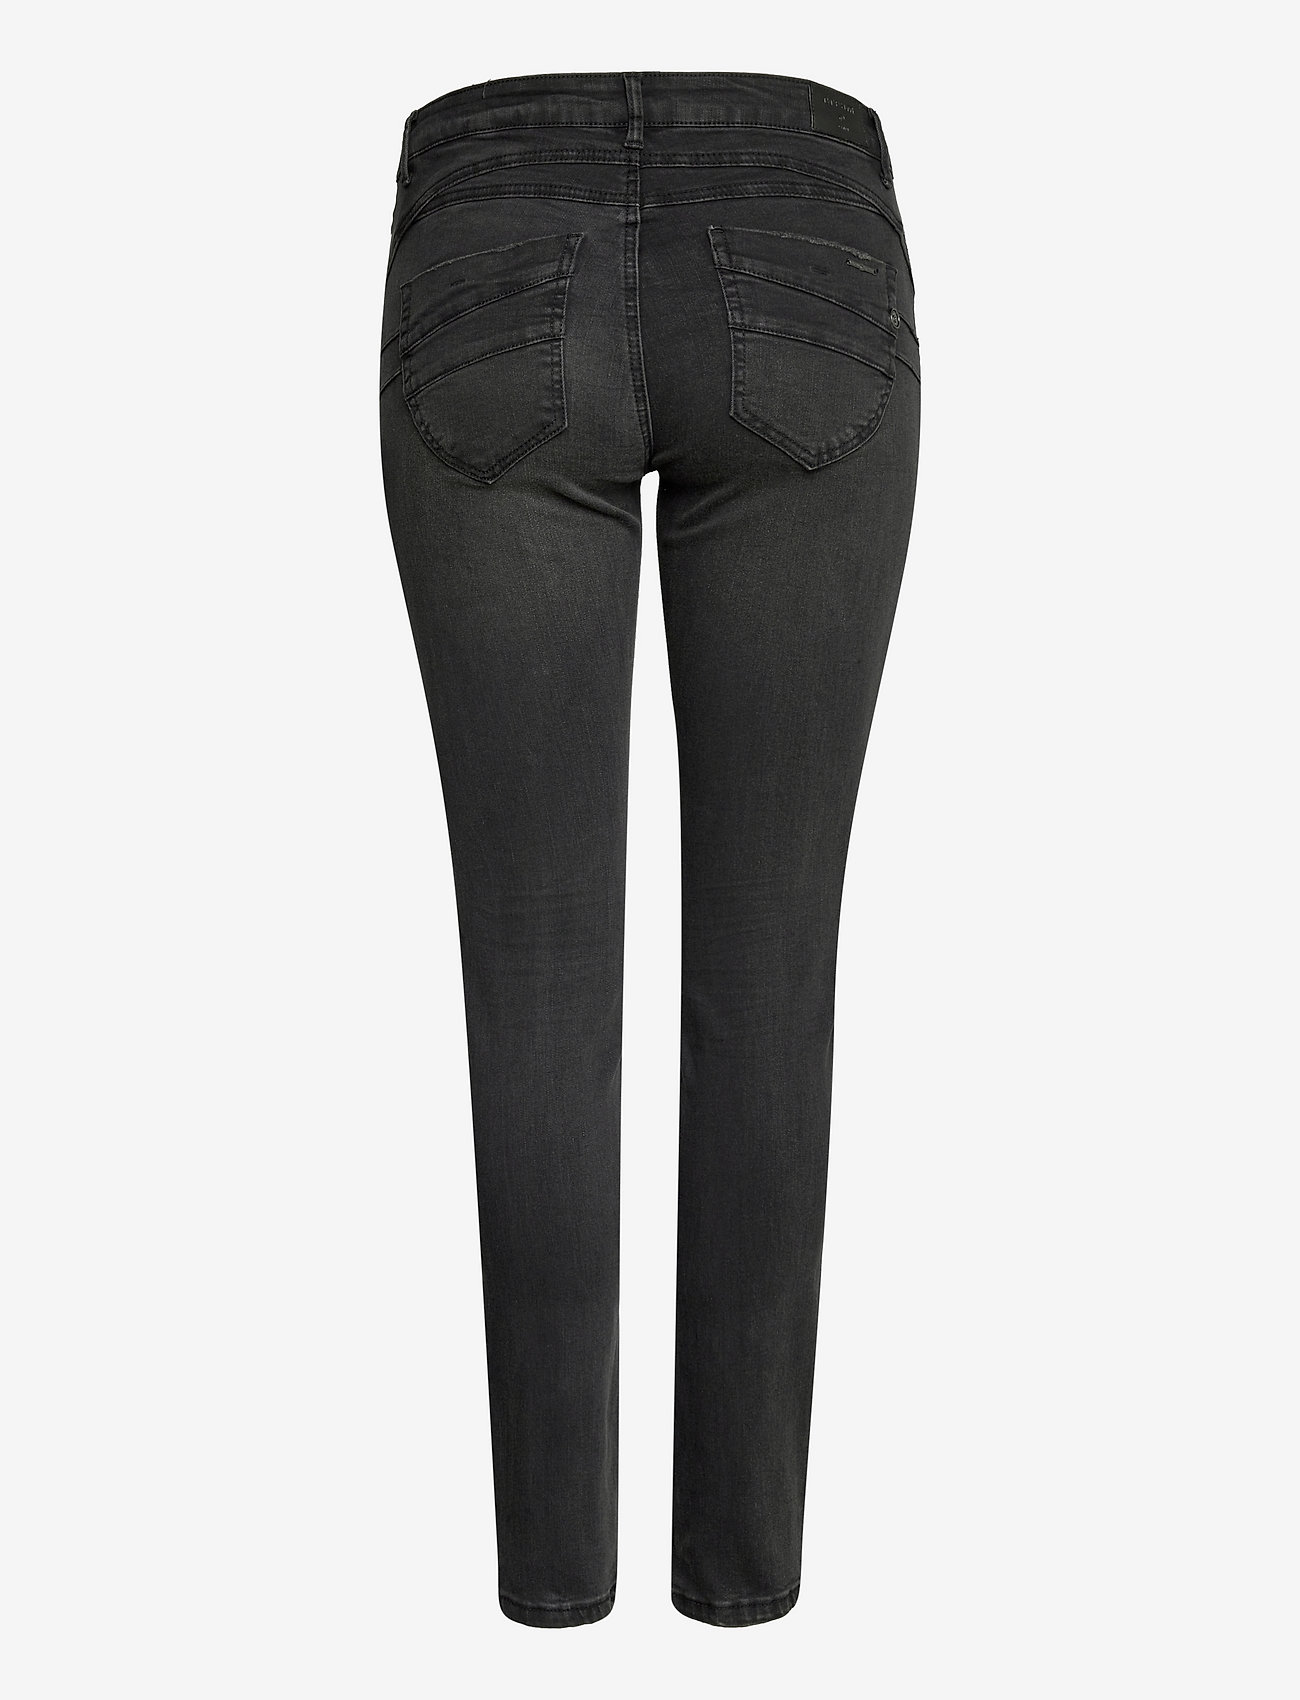 Cream - CRRikke Jeans - Shape Fit - skinny jeans - black wash - 1